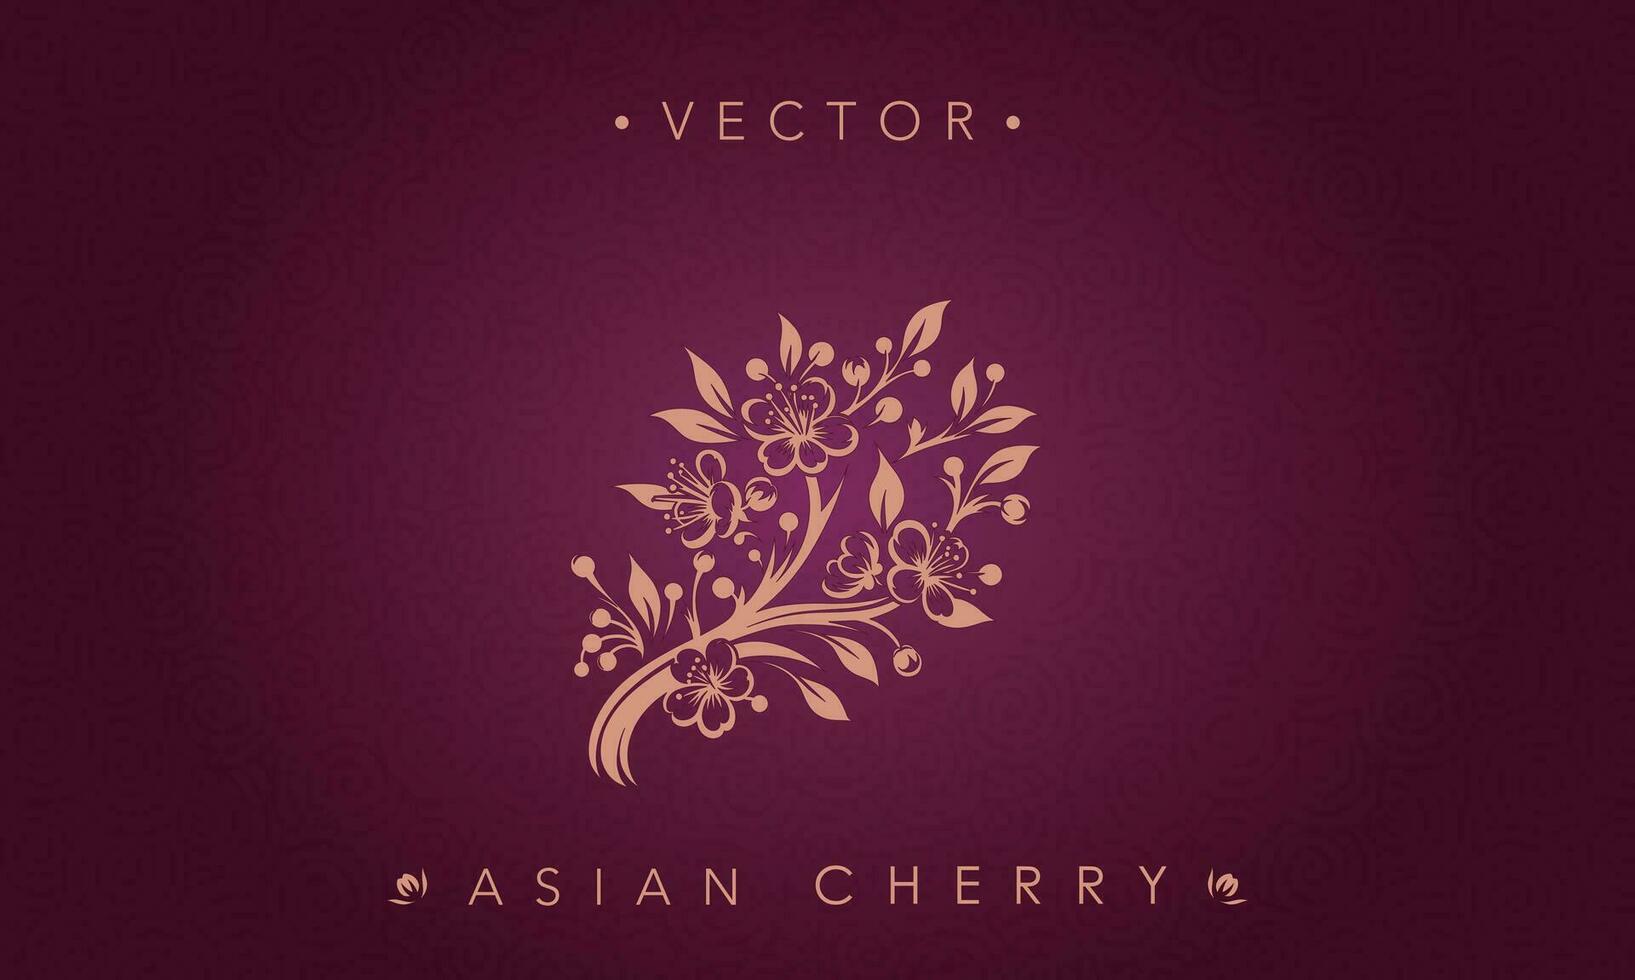 rödbrun silhuett asiatisk körsbär blomma vektor